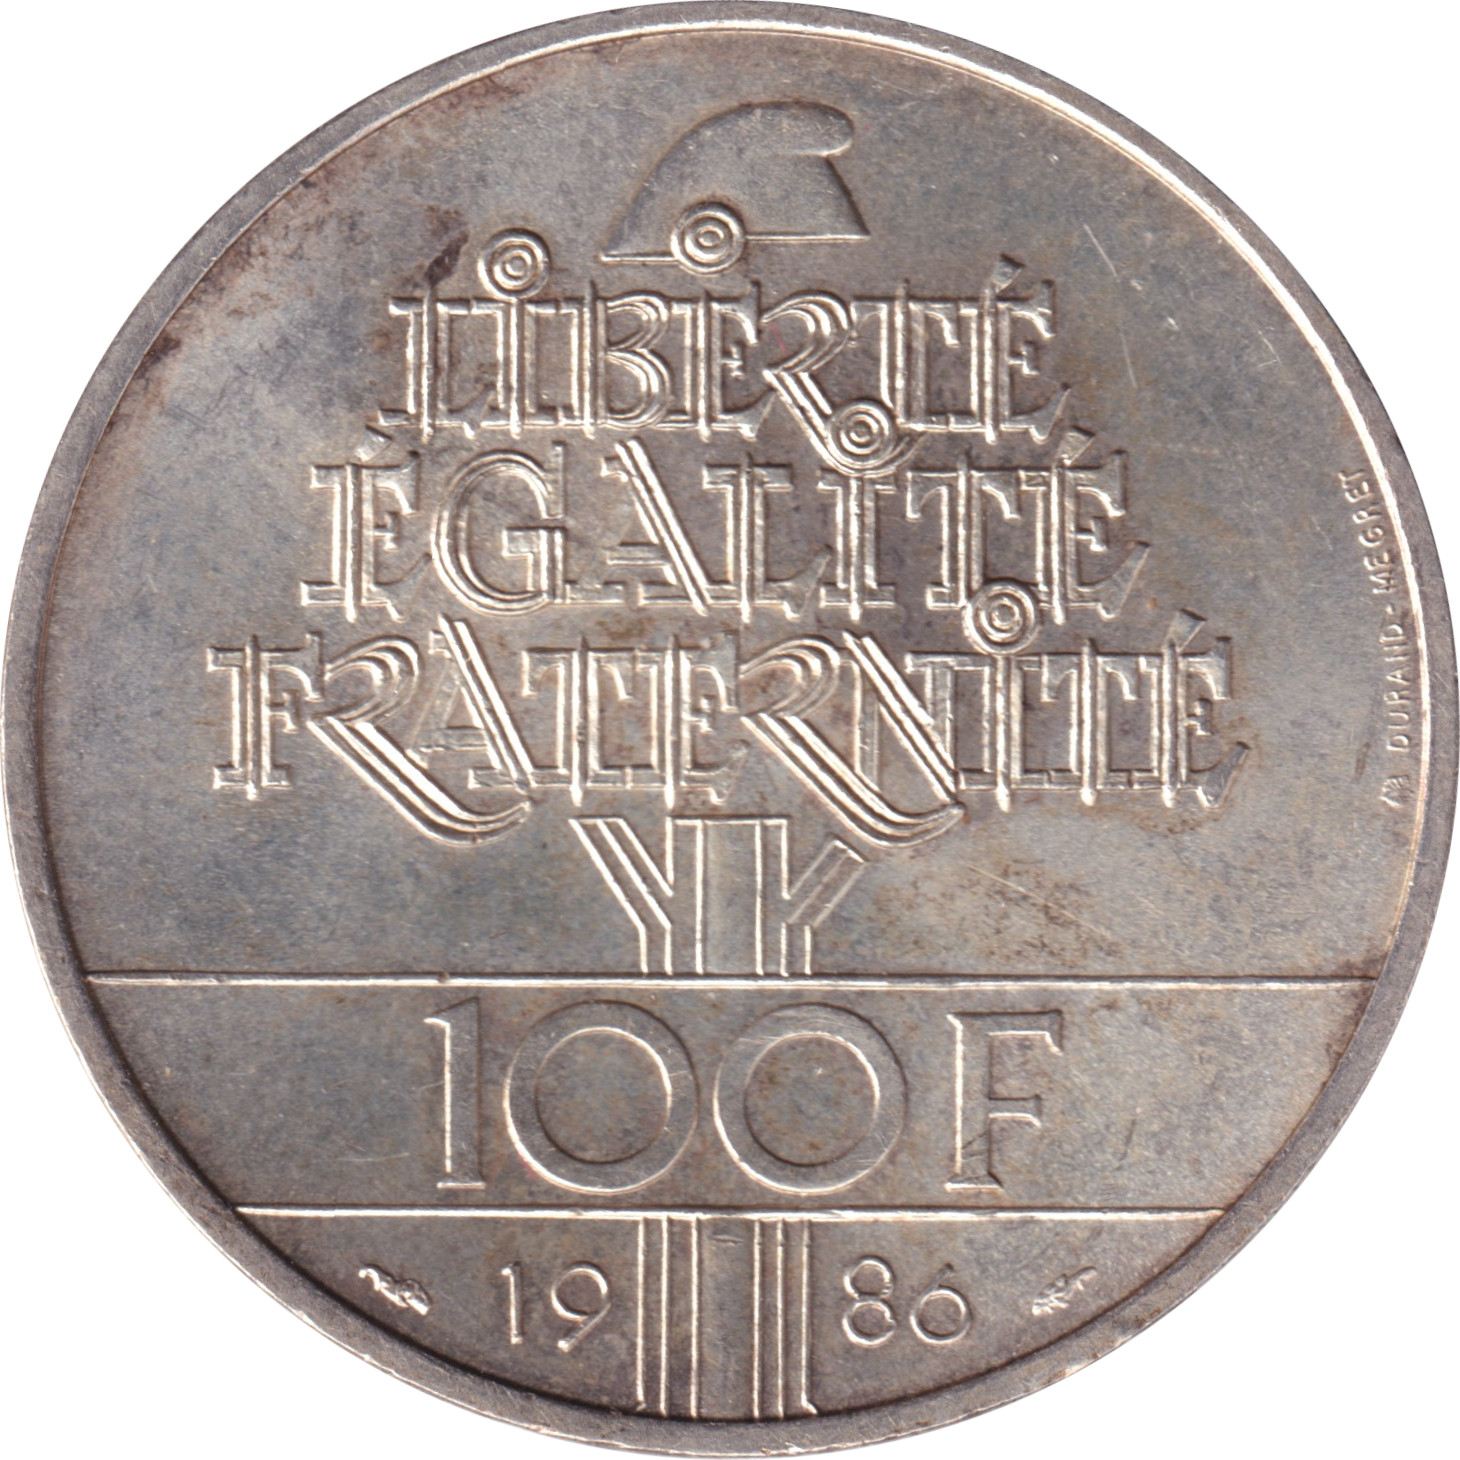 100 francs - Statue de la Liberté